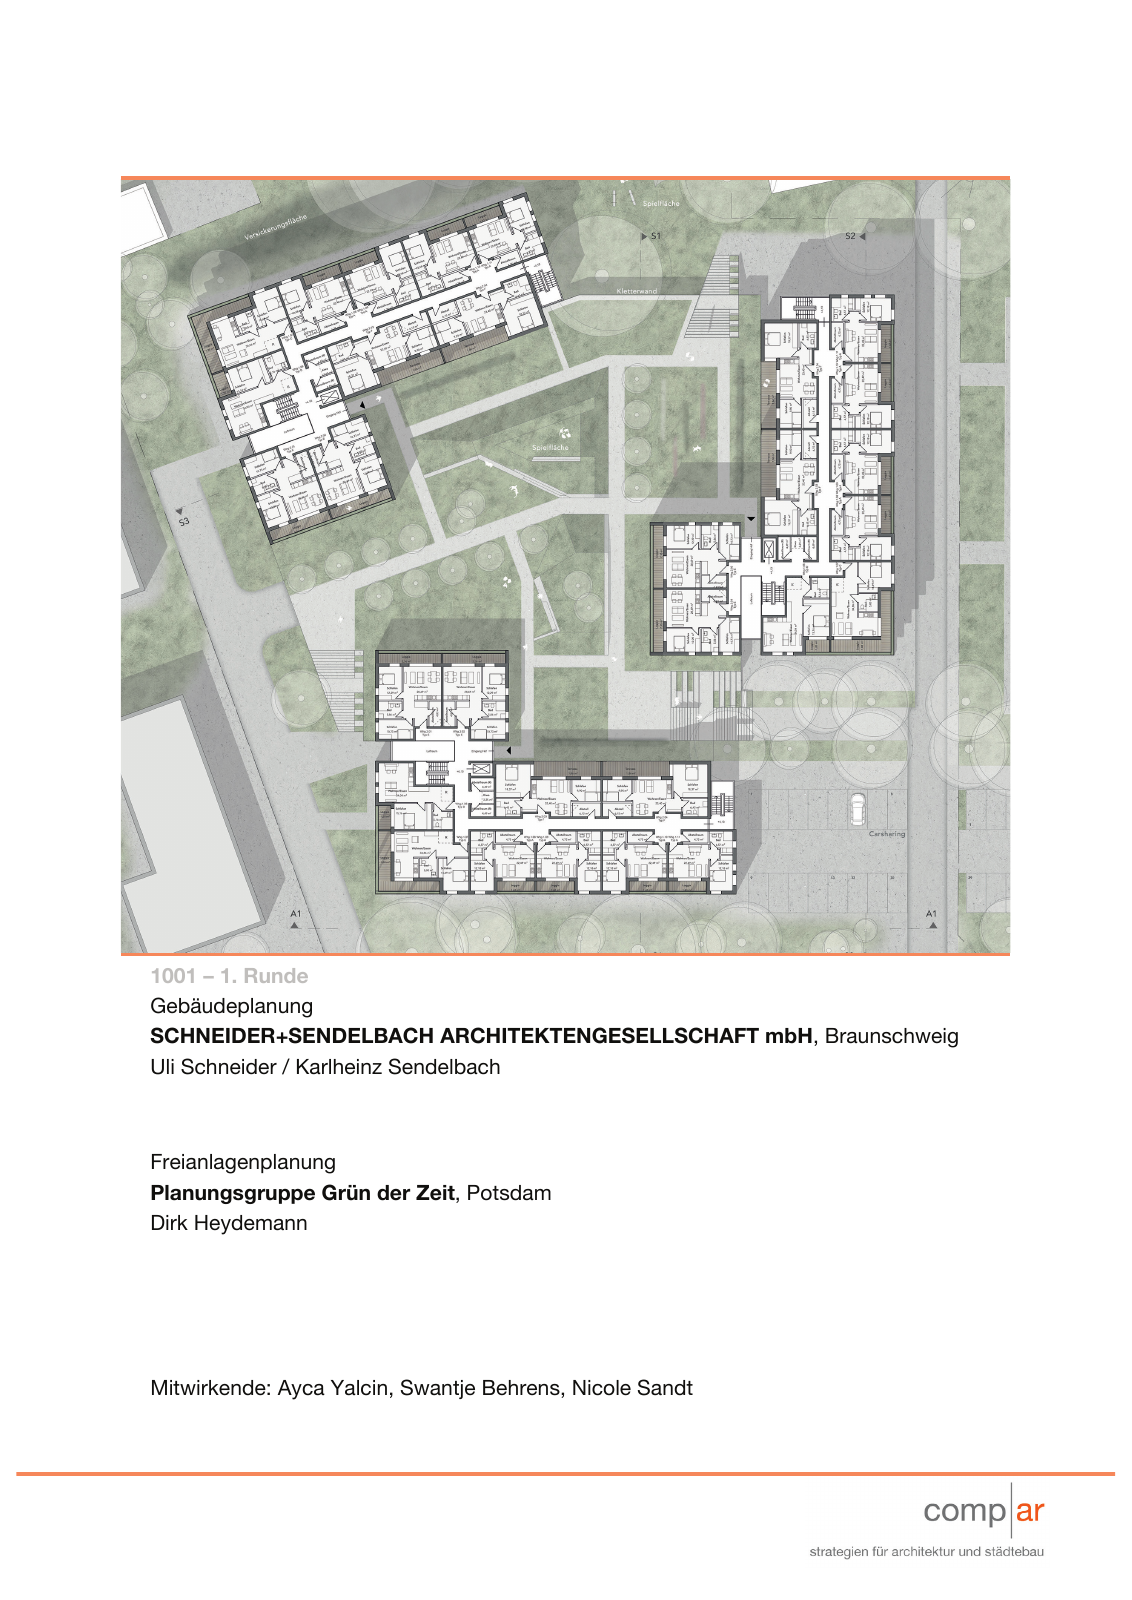 Vorschau Neubau von 100 Wohneinheiten [Nordhorn] Seite 21